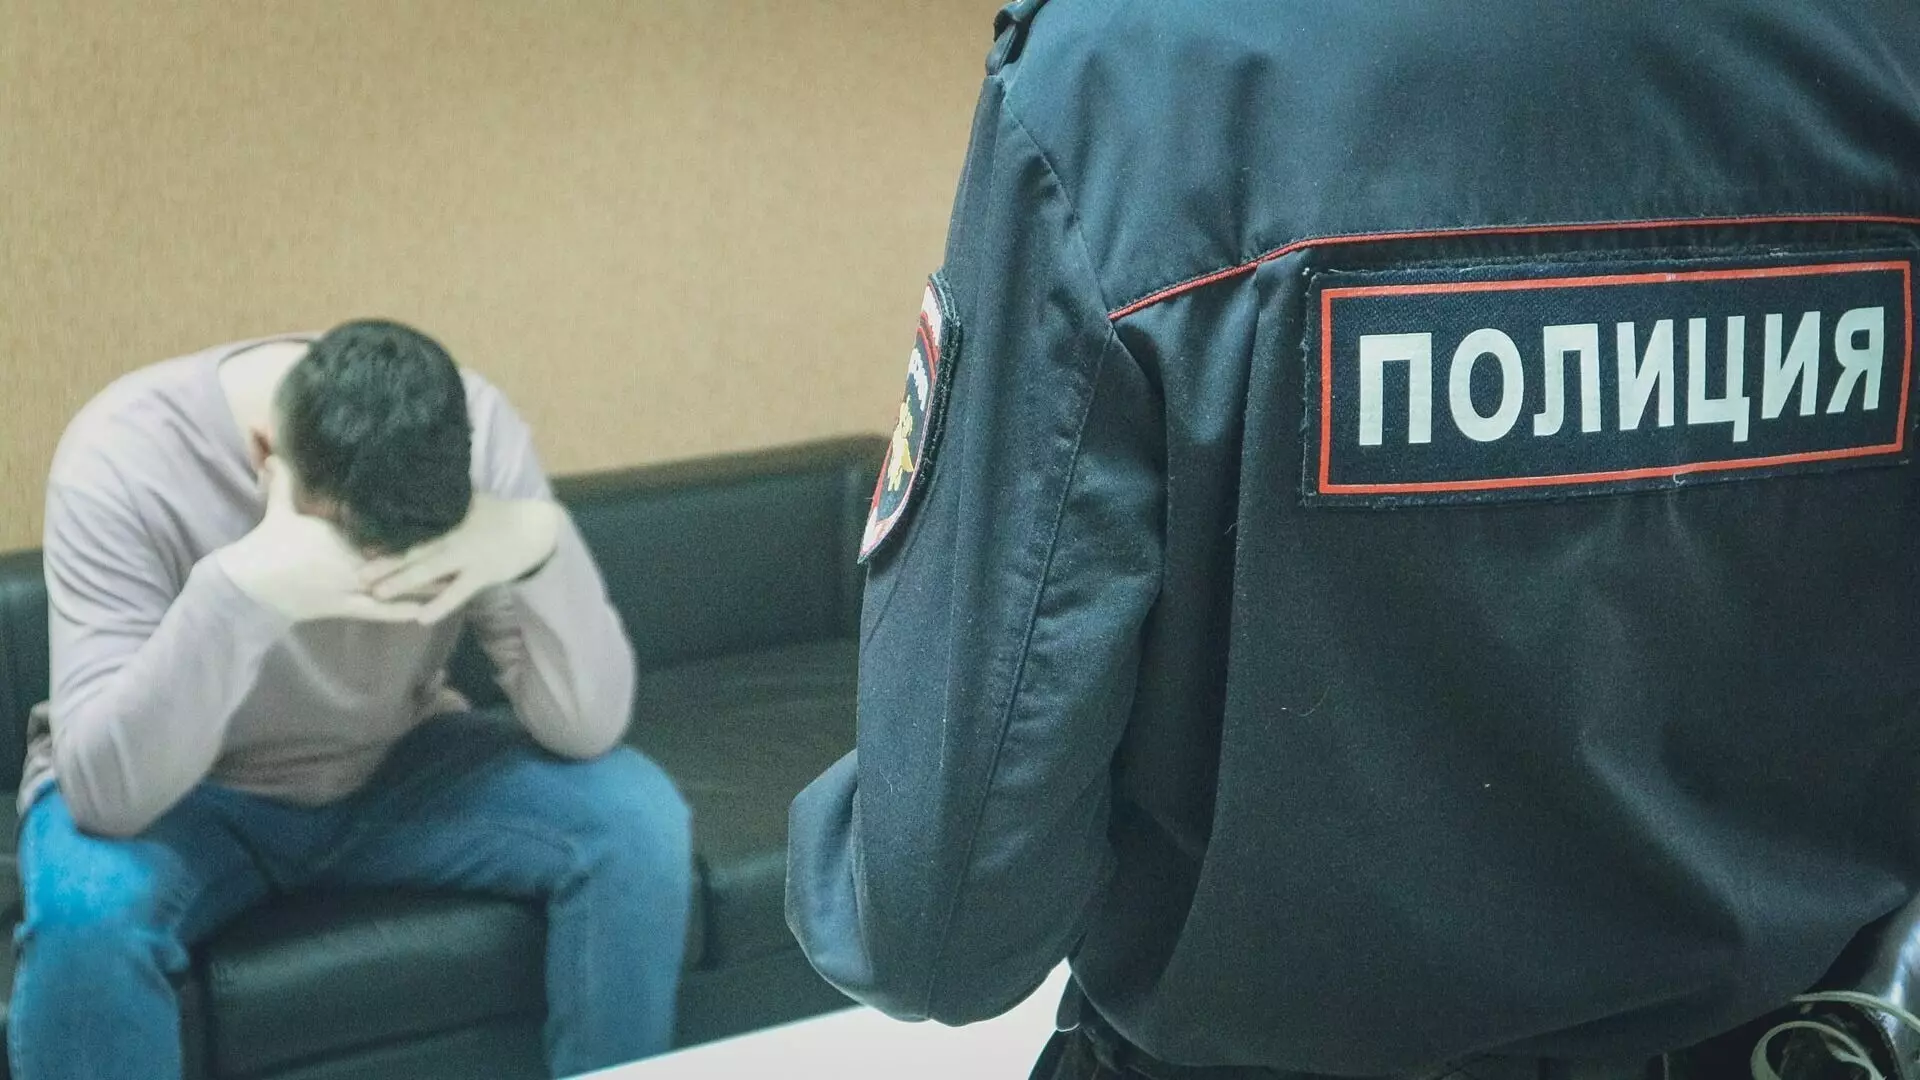 Аферисты обманули пенсионеров на миллион в Волгограде